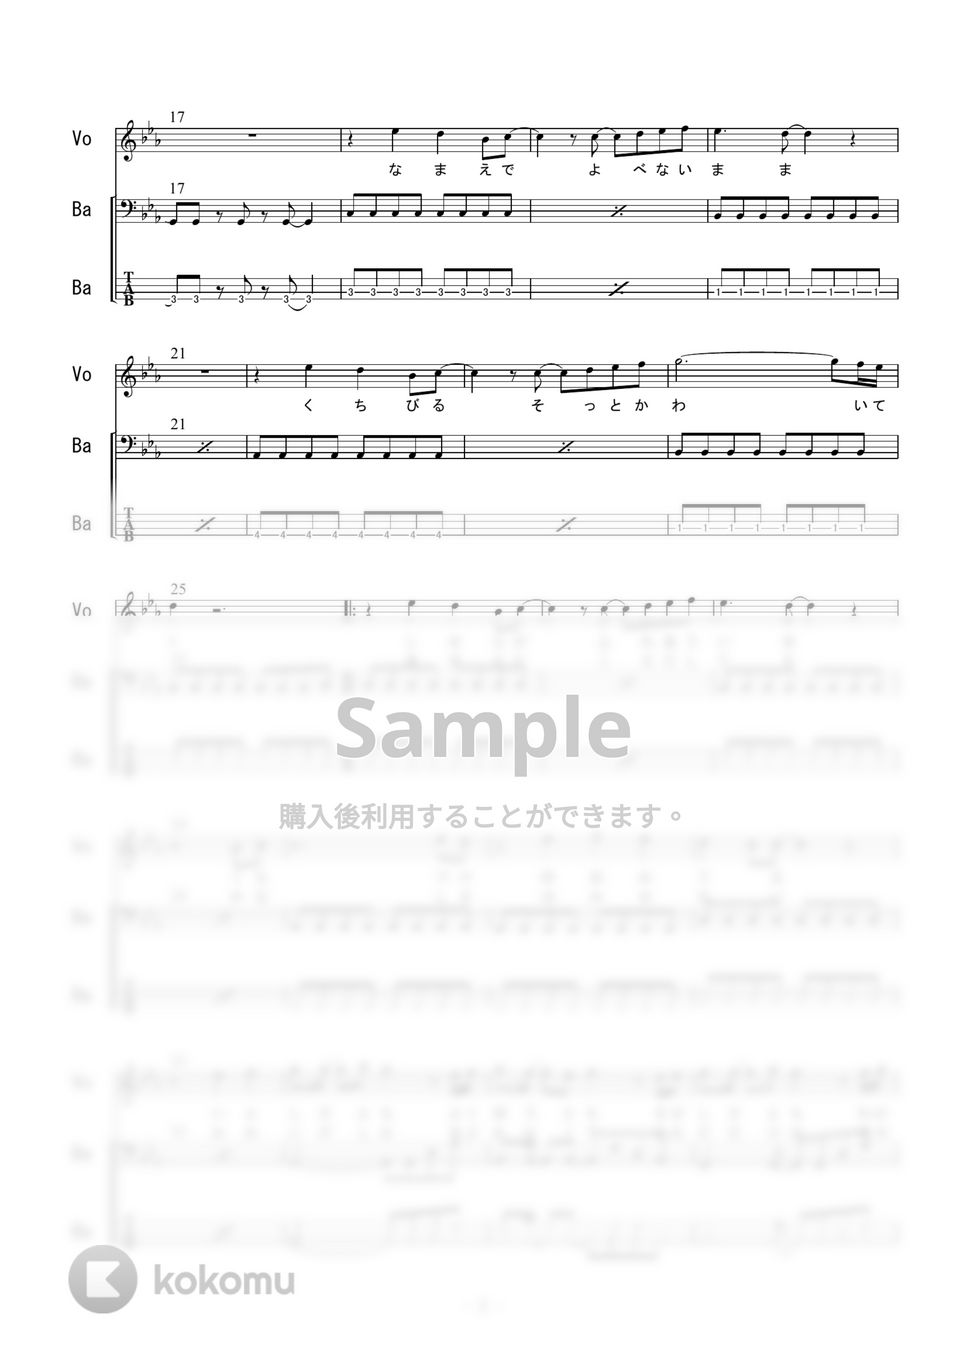 新田美波 - ヴィーナスシンドローム (ベース) by 二次元楽譜製作所